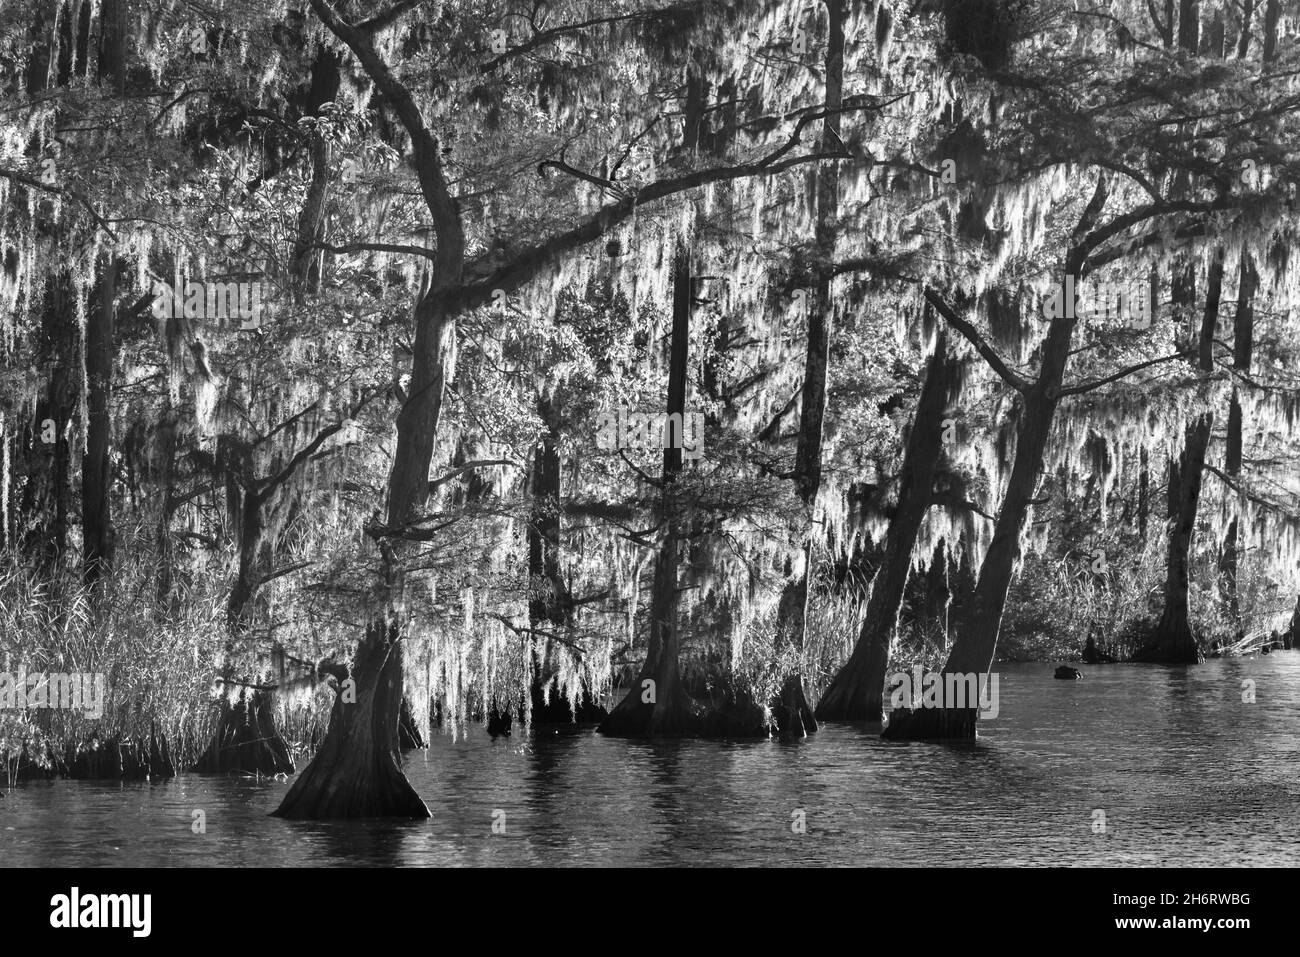 Zypressen säumen die Ufer des Tensaw River im historischen Blakeley State Park in der Nähe des Spanish Fort, Alabama. Stockfoto